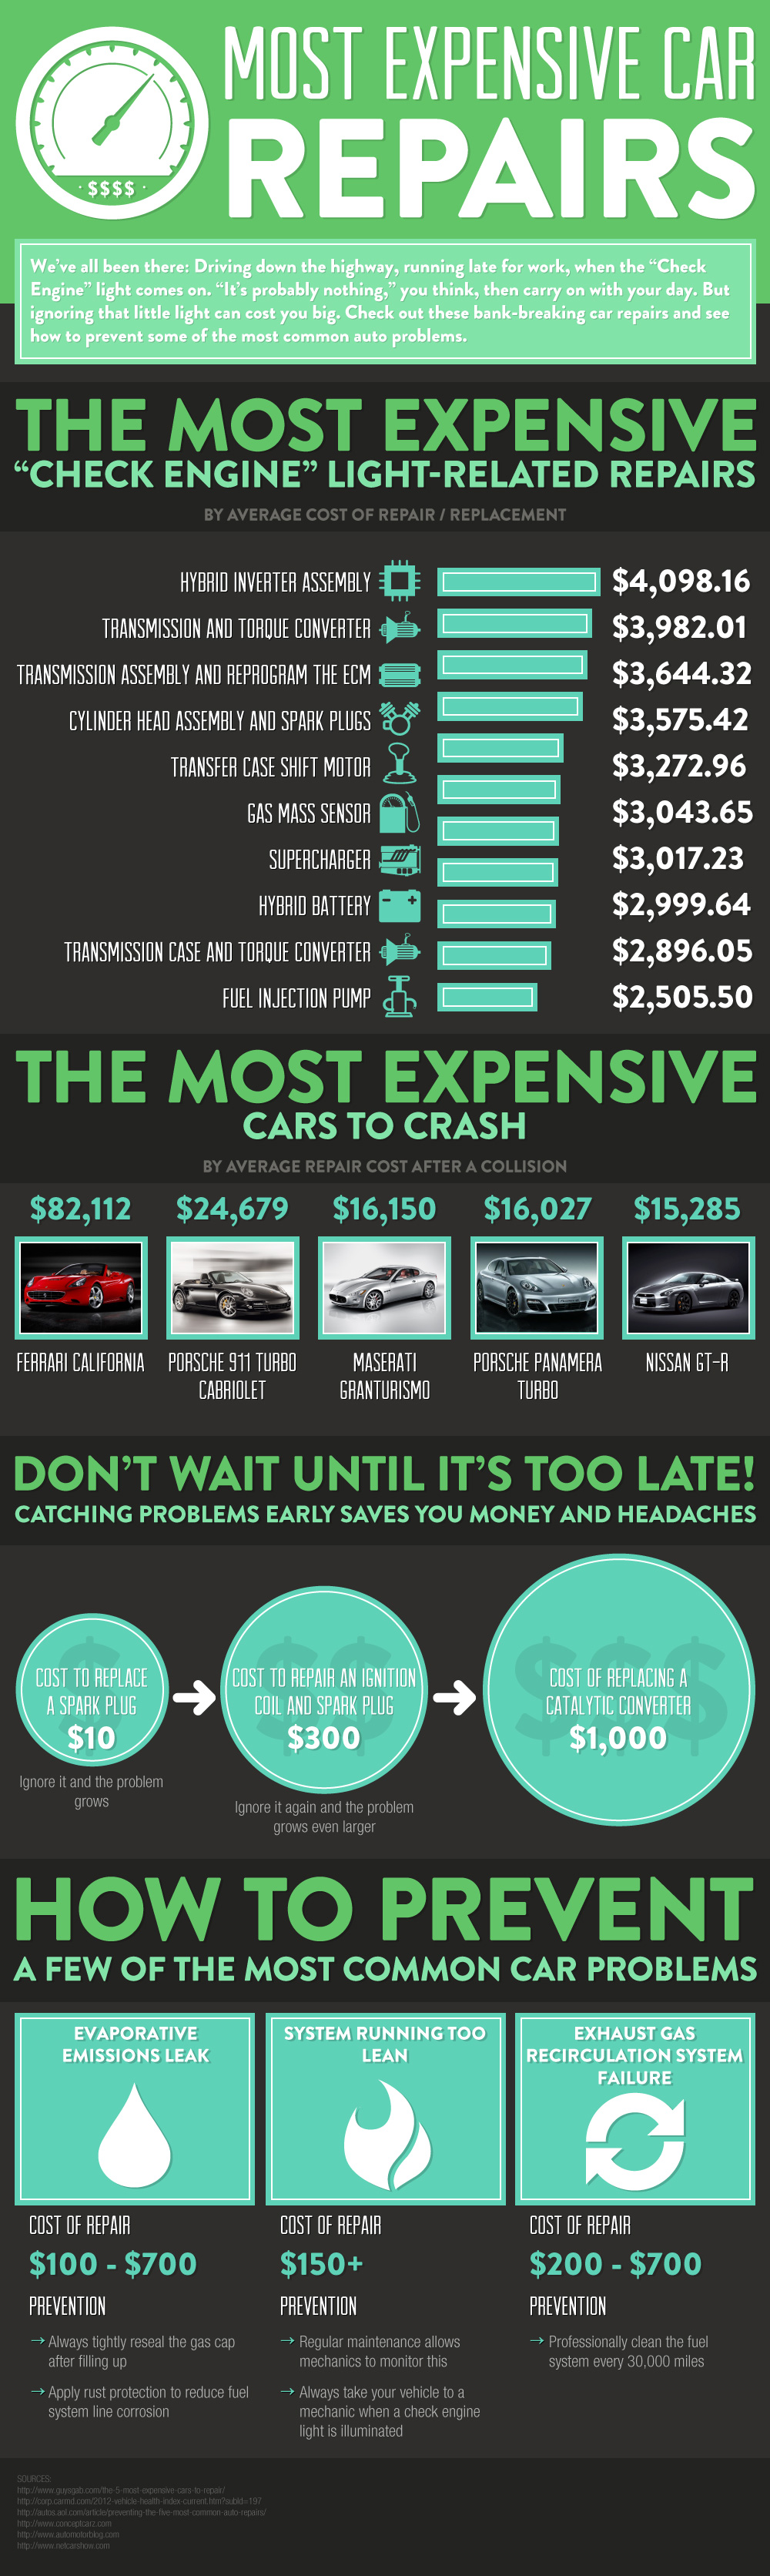 Most Expensive Car Repairs